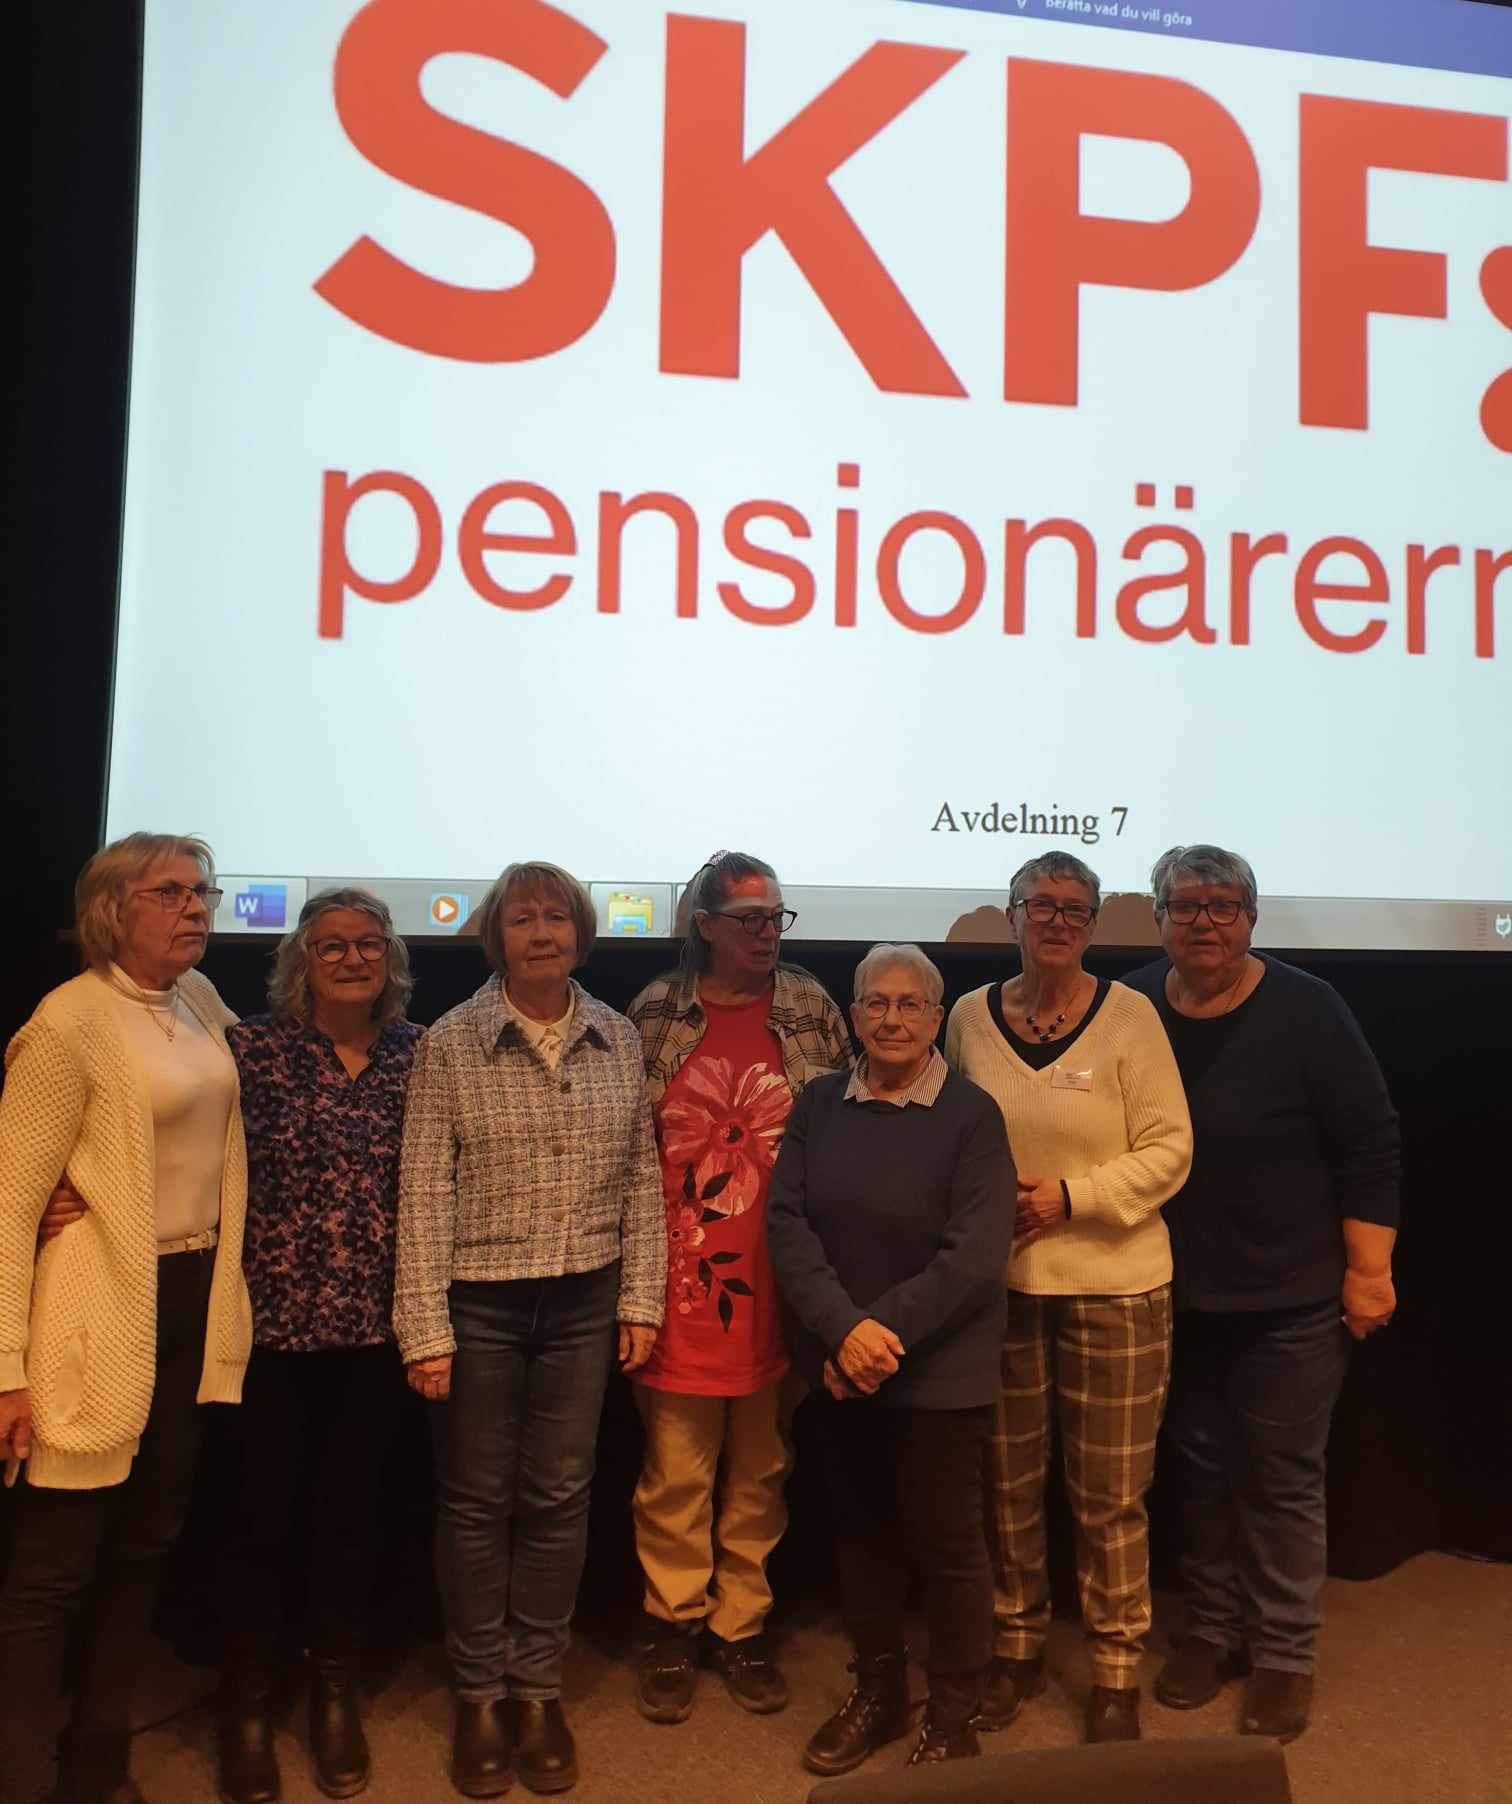 Styrelsen för SKPF pensionärerna avdelning 7